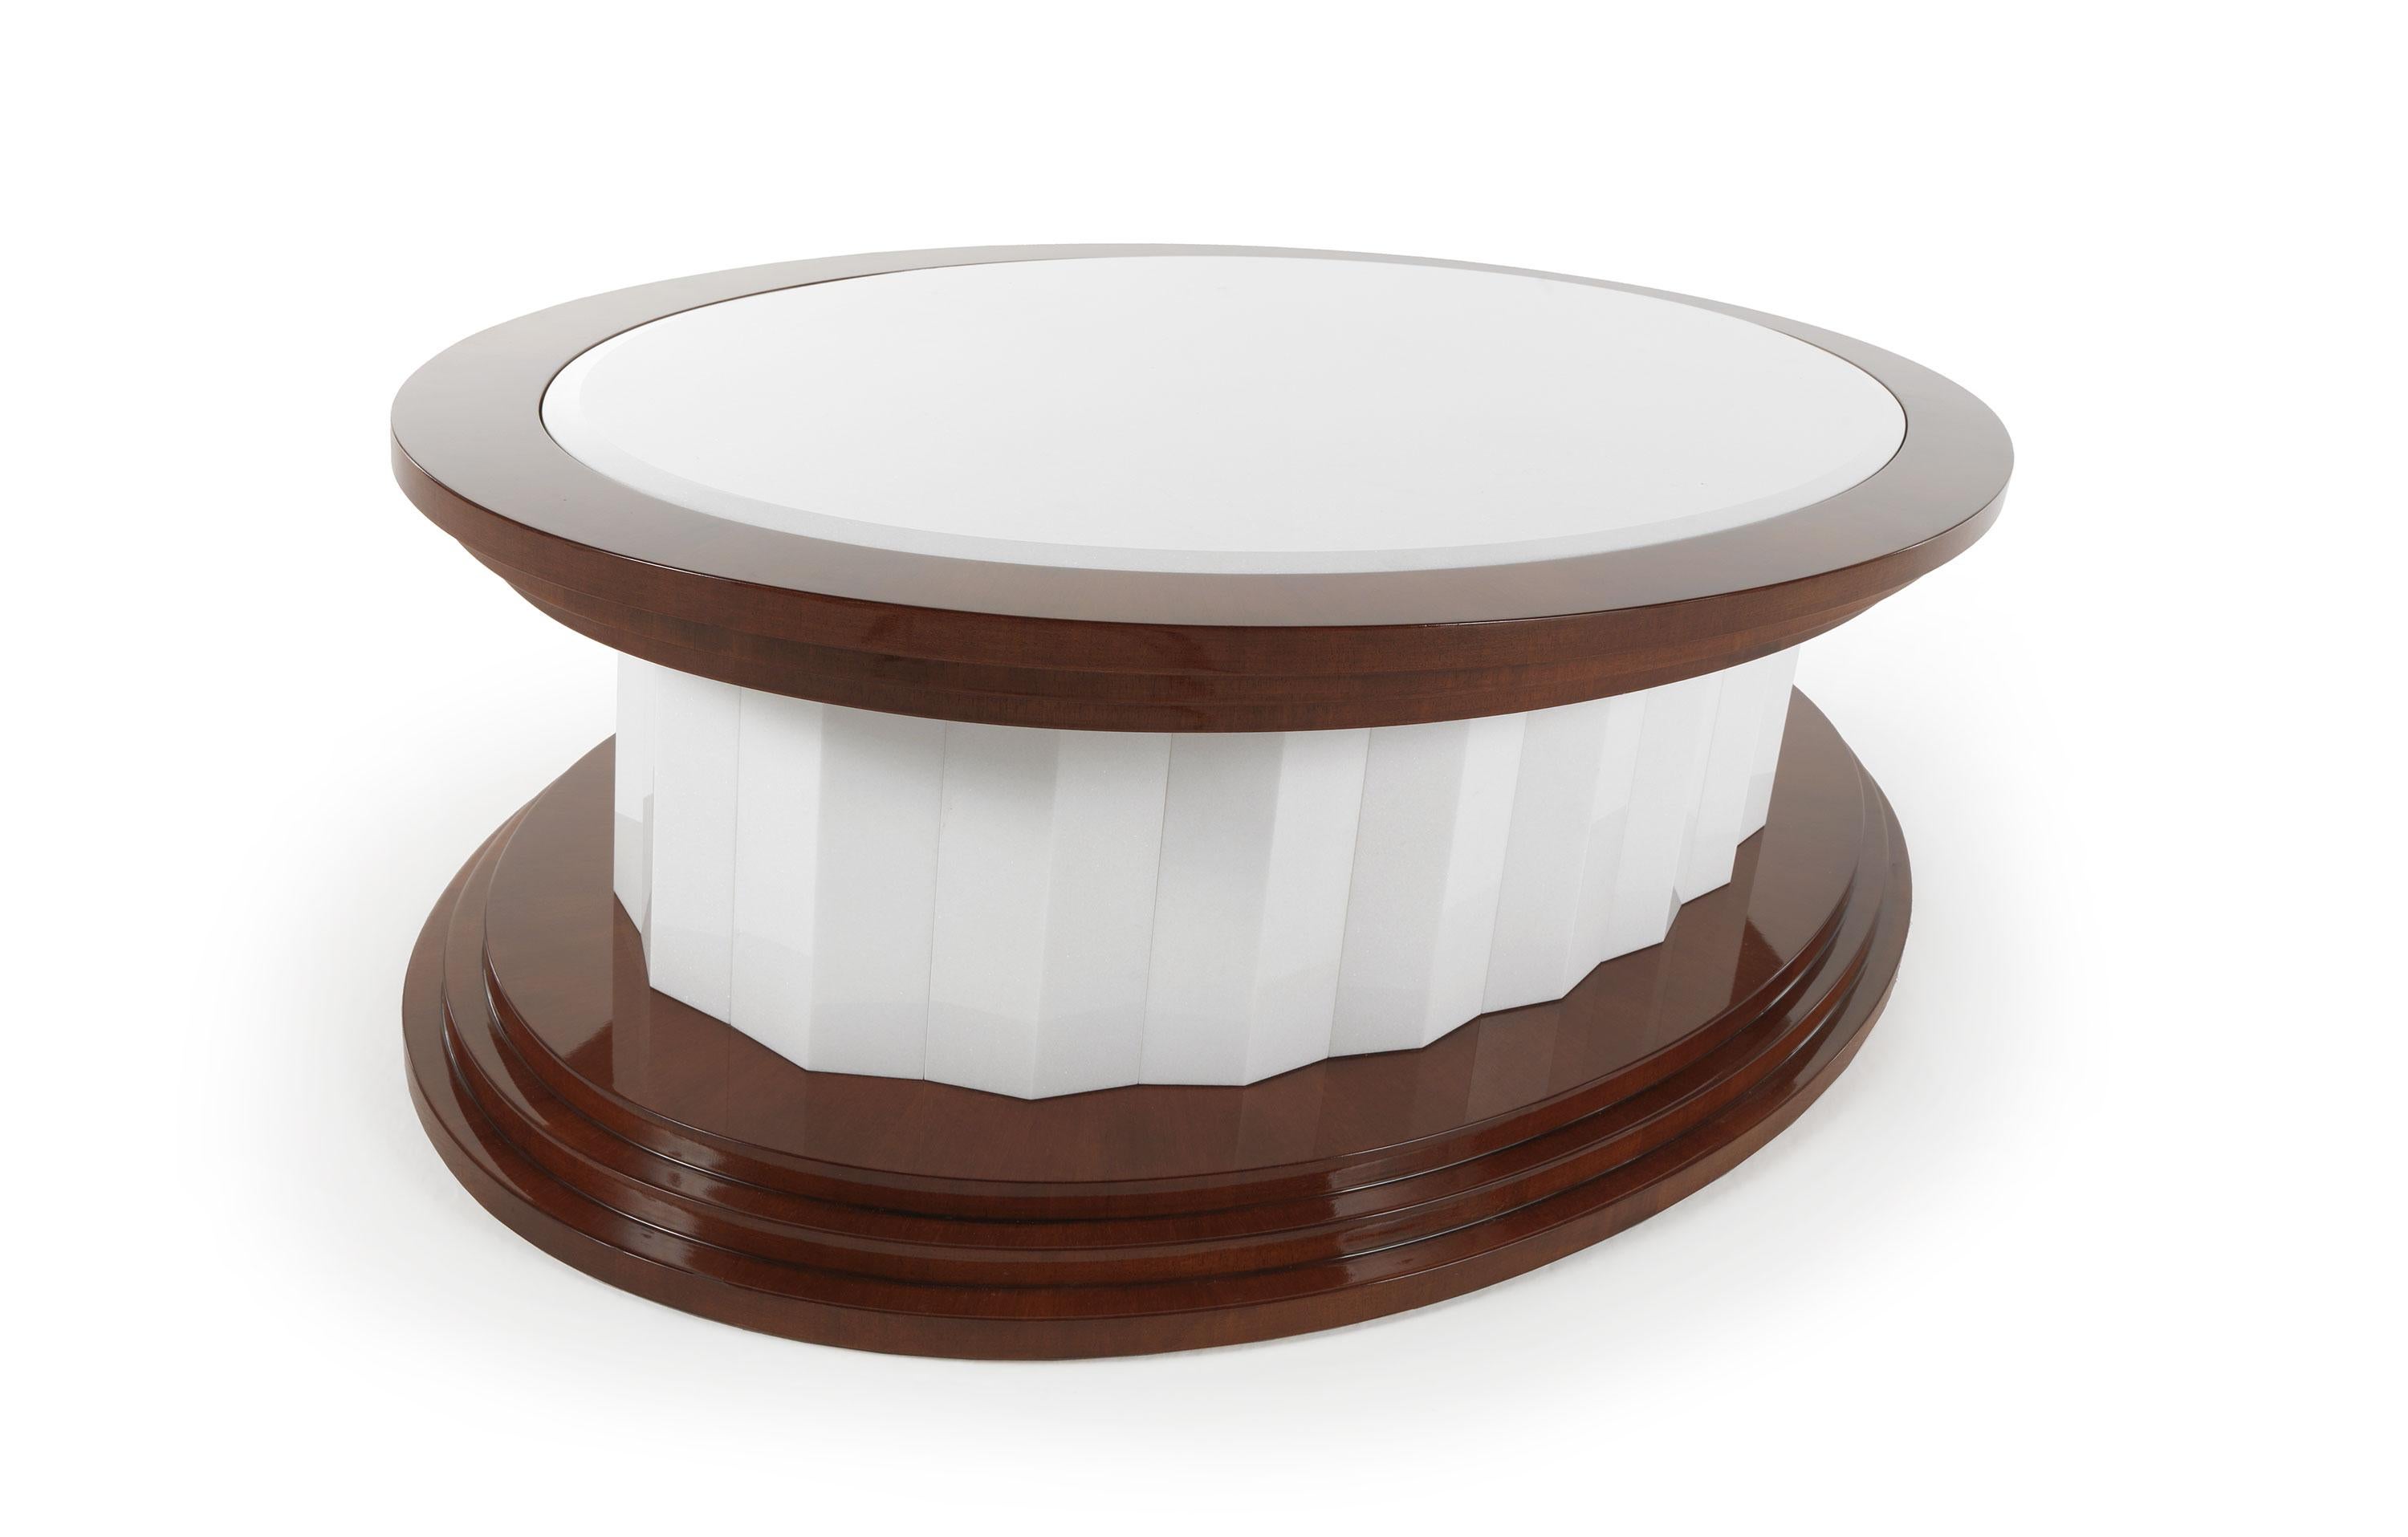 Ein runder Tisch, der mit dem Kontrast zwischen der Leuchtkraft des Marmors und der natürlichen Solidität des Mahagonis spielt. Ein elegantes und vielseitiges Möbelstück, das sich perfekt für dynamische und funktionelle Kompositionen in klassisch